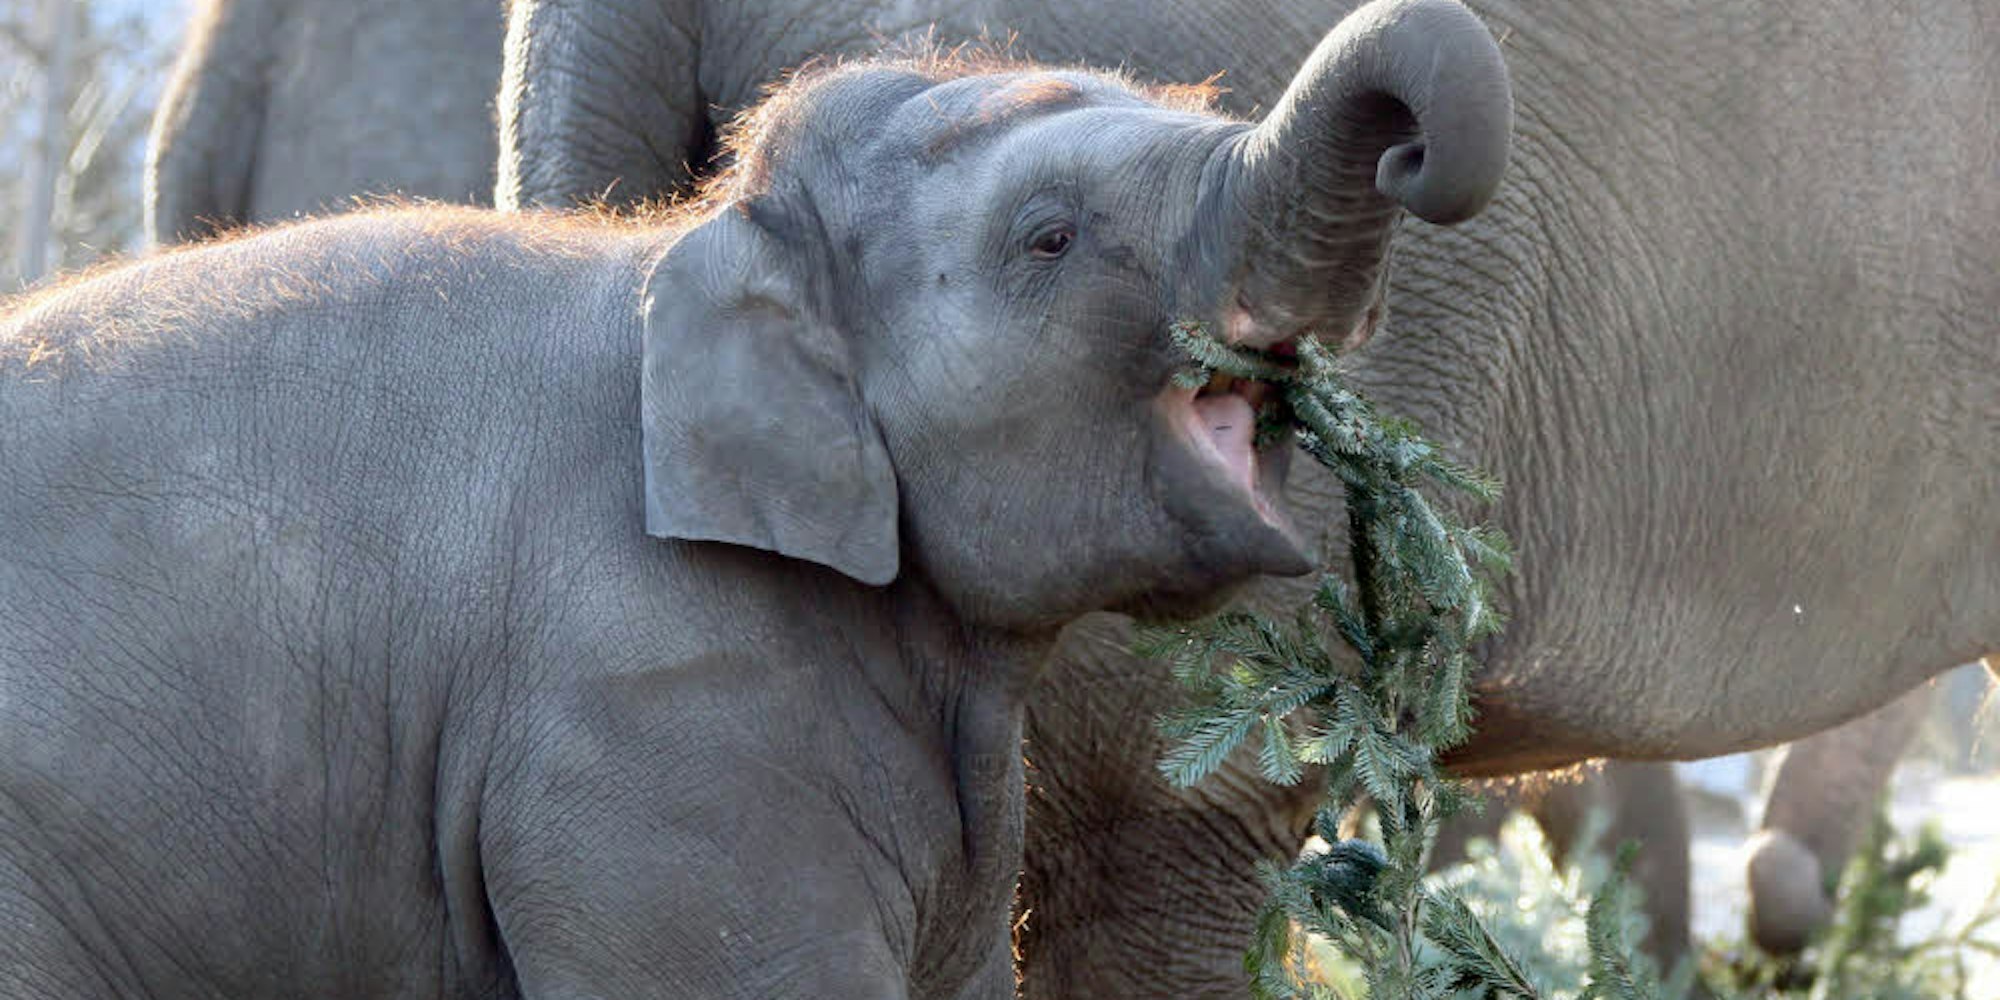 Leckerbissen: Elefanten freuen sich über die Zweige ausgedienter Weihnachtsbäume.